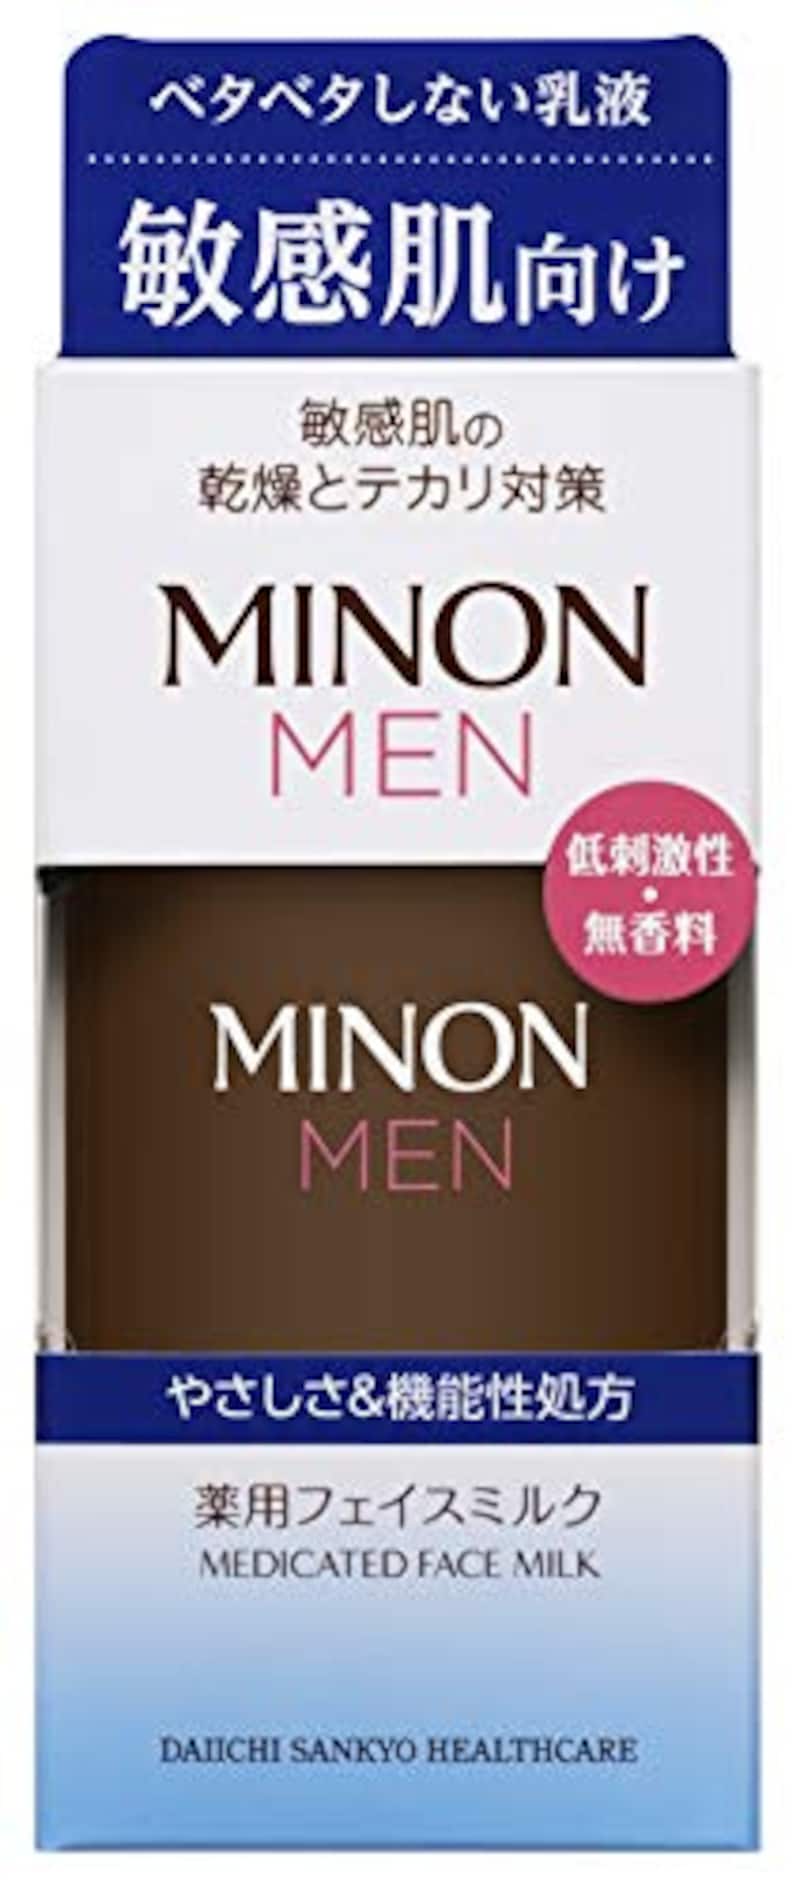 第一三共ヘルスケア,MINON MEN（ミノンメン）薬用フェイスミルク